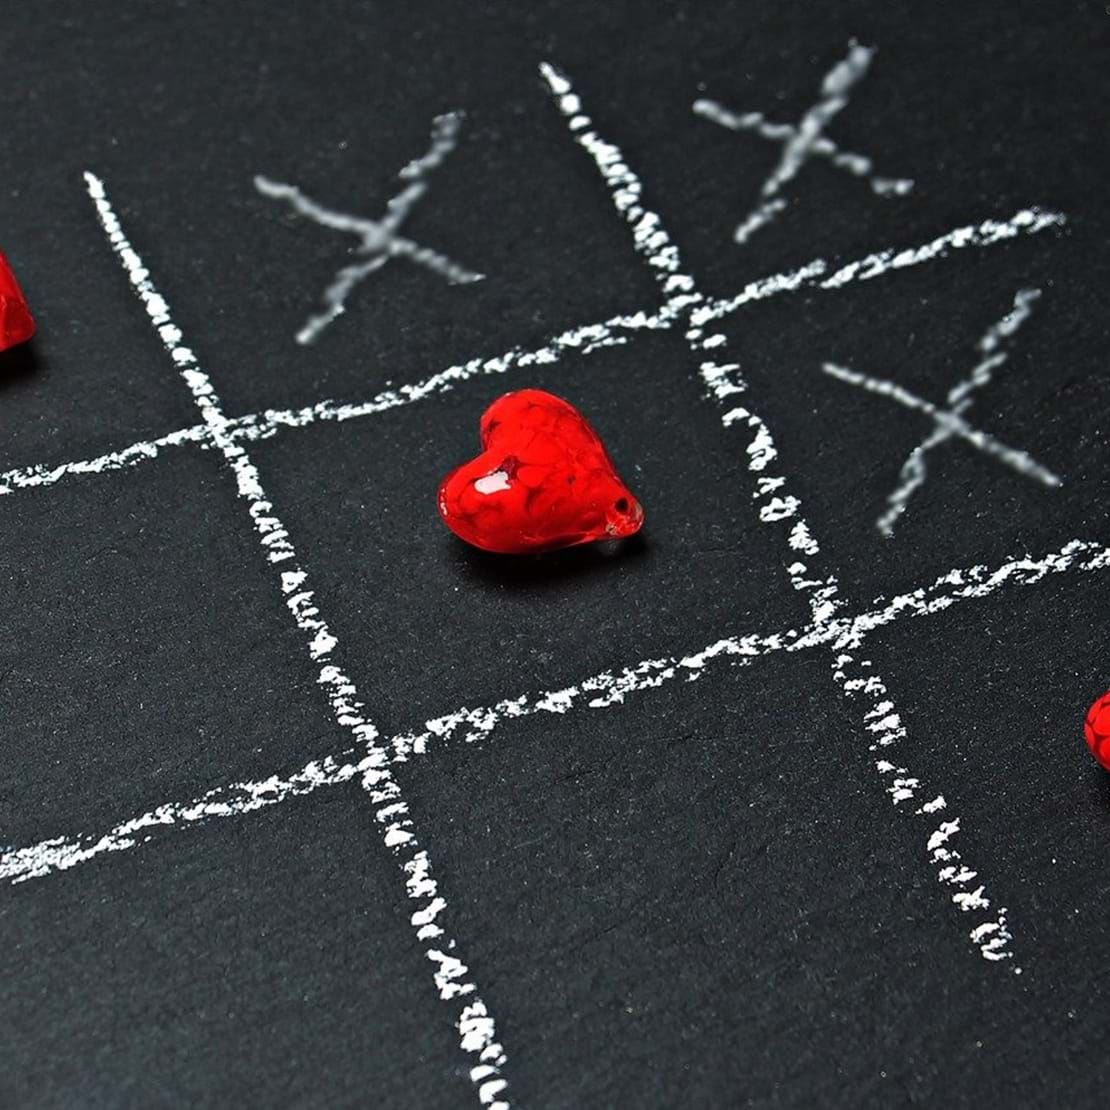 Tre på stribe hjerter i et spil kryds og bille tegnet på med kridt på en tavle.